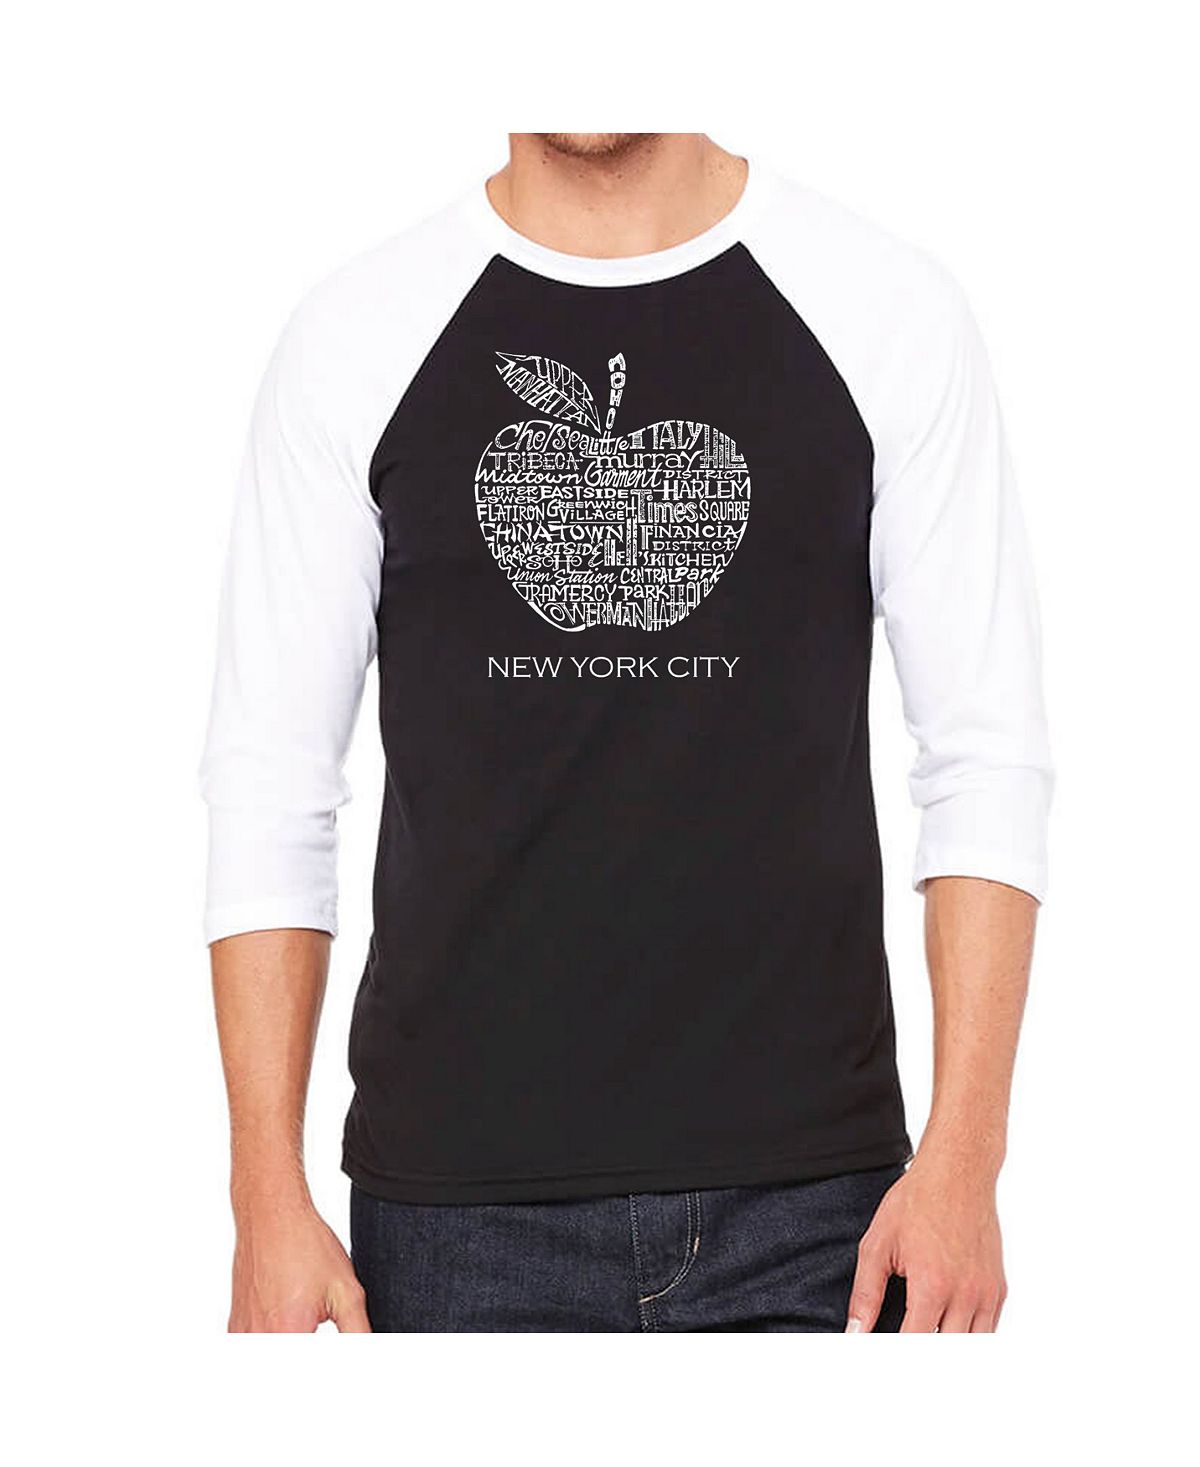 Мужская футболка с надписью reglan и надписью neighborhoods in new york city LA Pop Art, черный printio 3d кружка new york city club